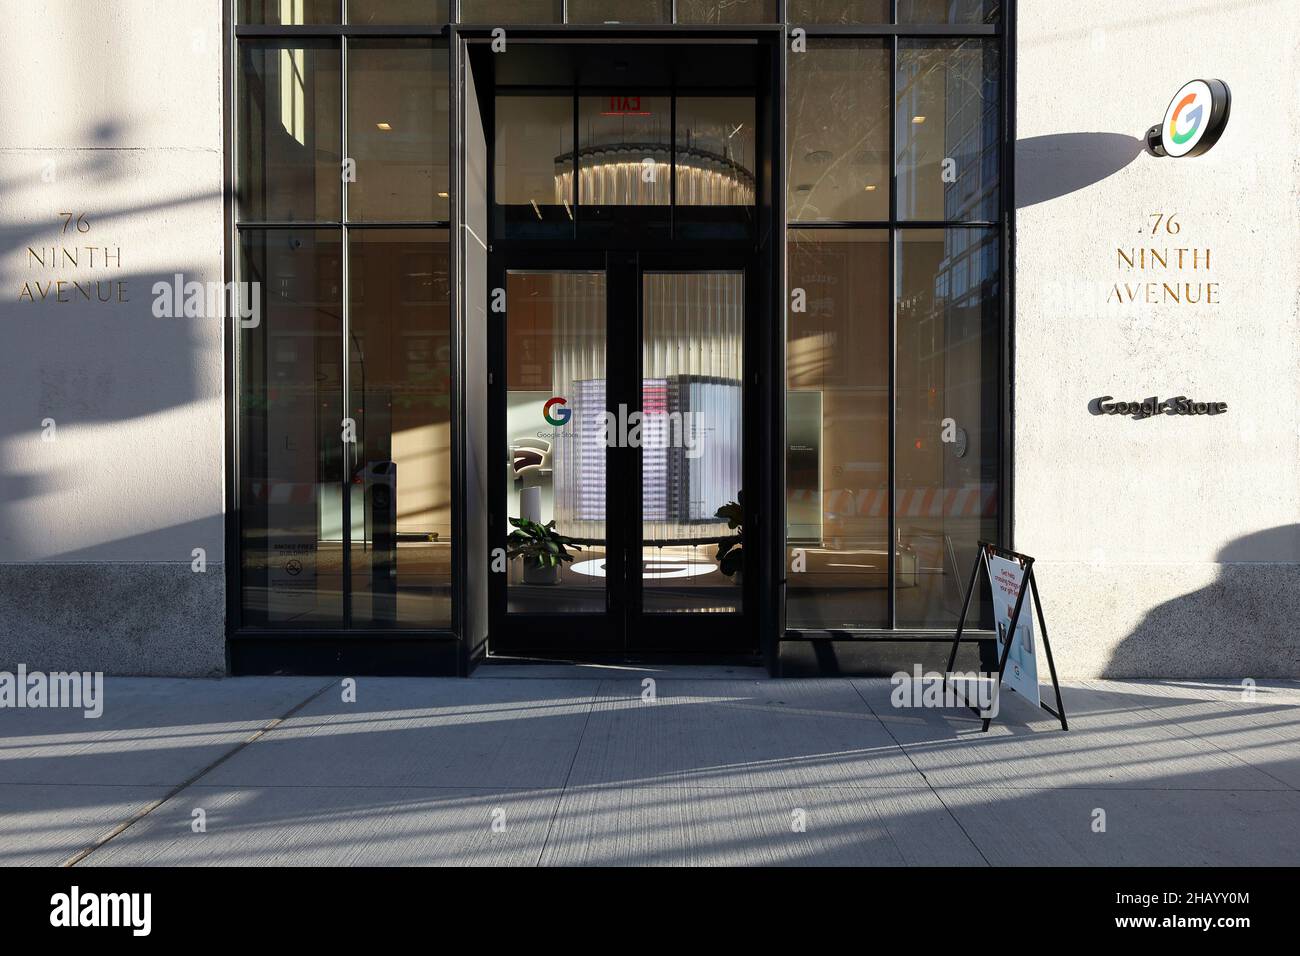 Google Store, 76 9. Ave, New York, NYC Schaufensterfoto eines Technologie- und Unterhaltungselektronikladens im Stadtteil Chelsea in Manhattan. Stockfoto